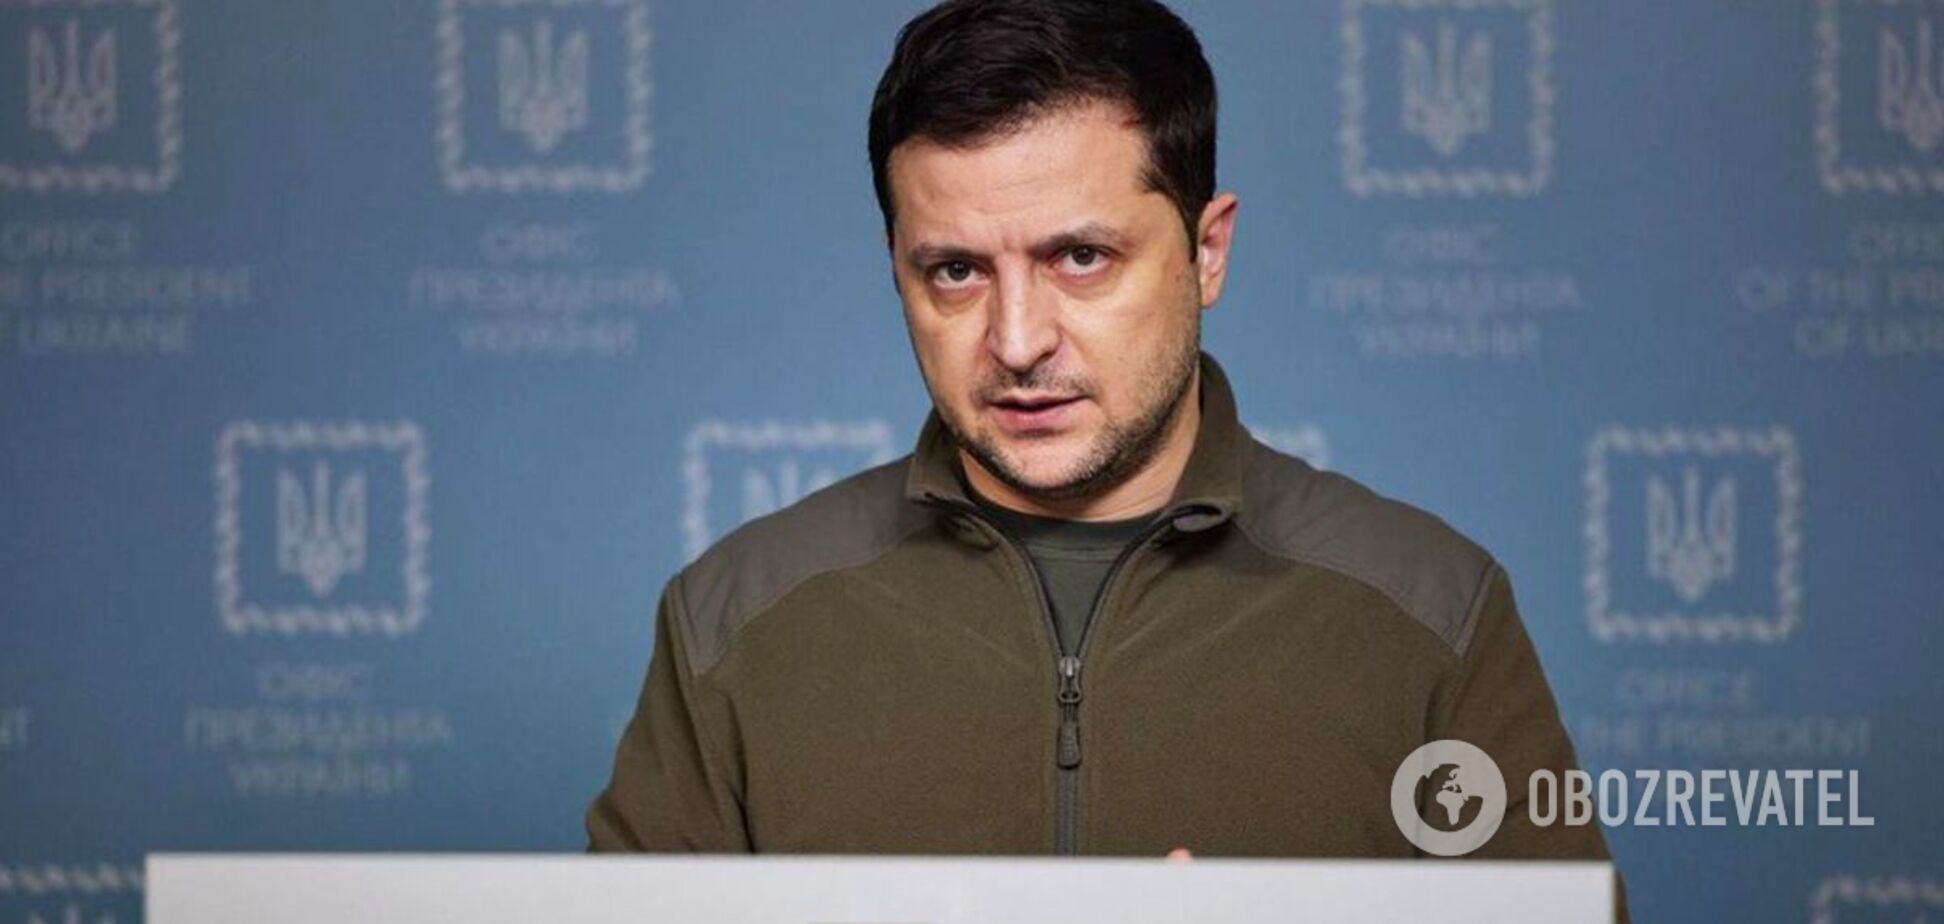 Російські воєнні злочинці будуть покарані: Зеленський про розслідування дій окупантів в Україні